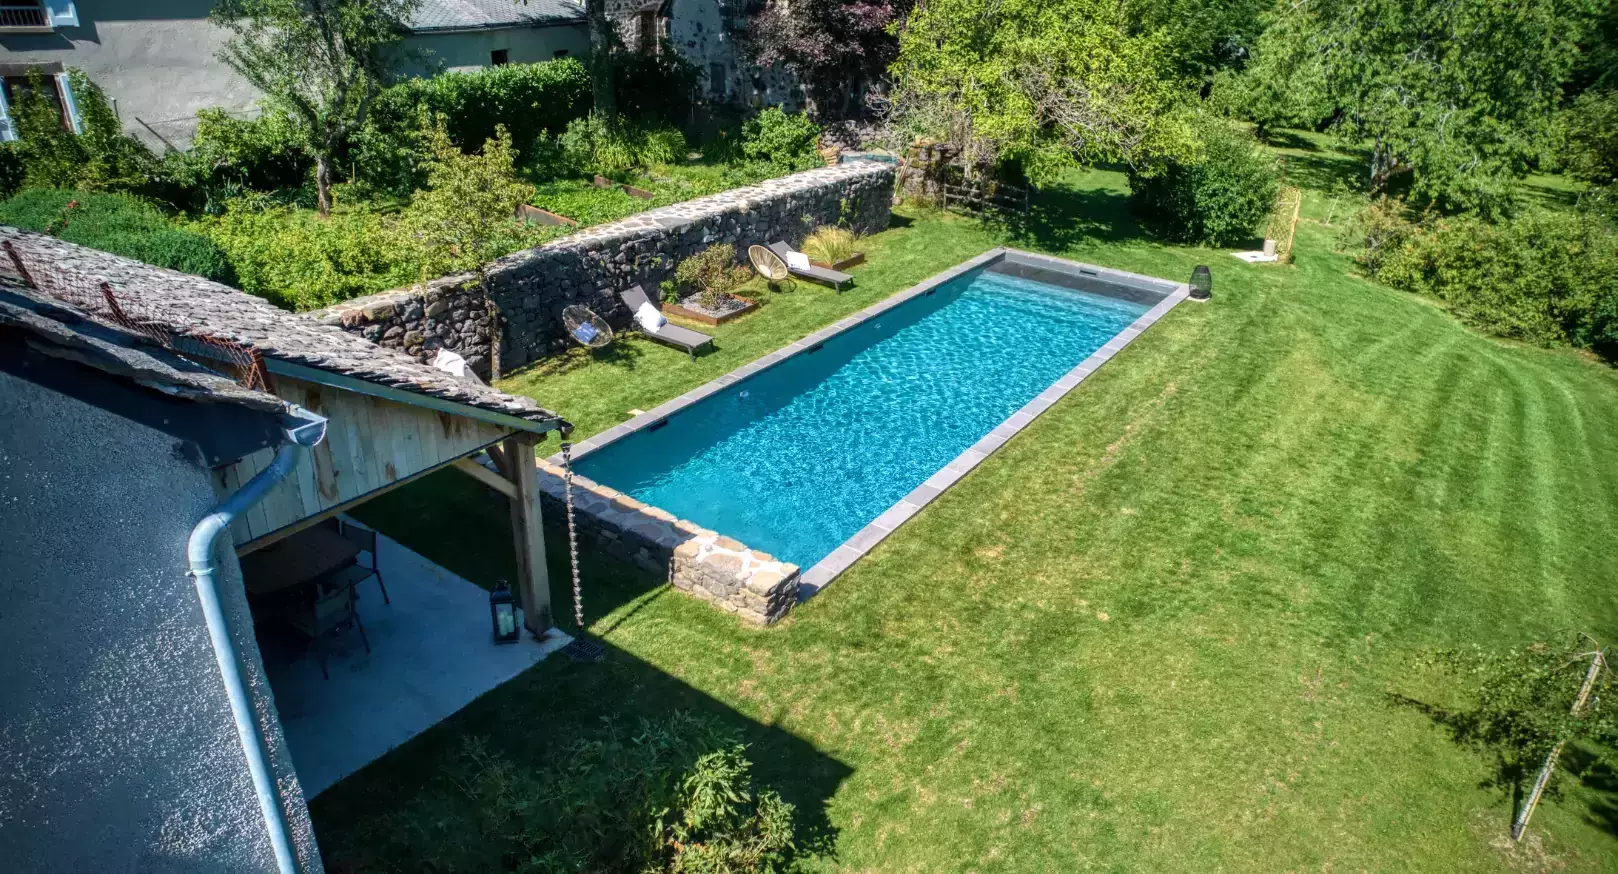 réation d'une piscine allongée dans le jardin d'une demeure au cœur d'un village français renommé pour sa beauté